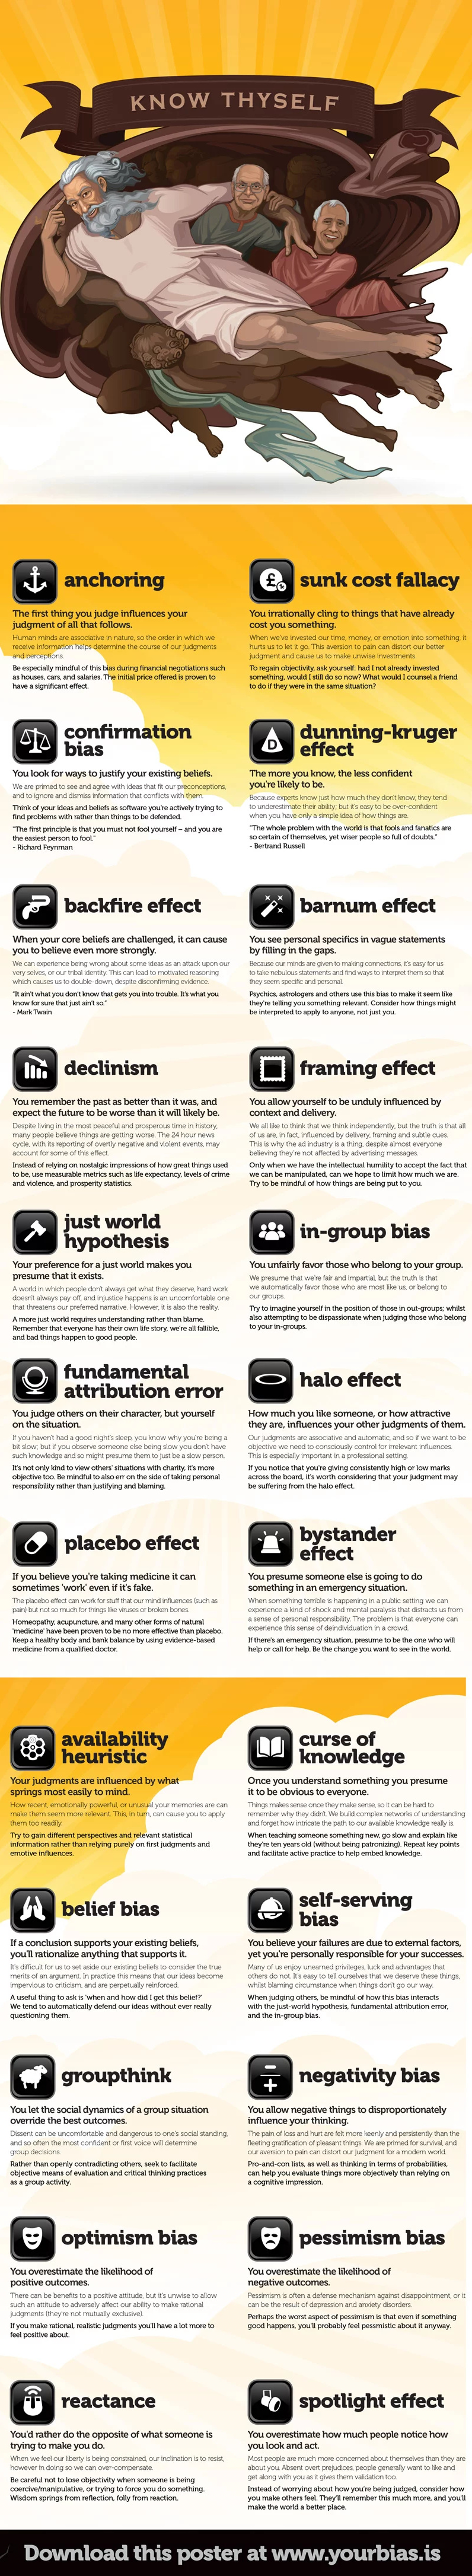 cognitive-bias-descriptions.jpg